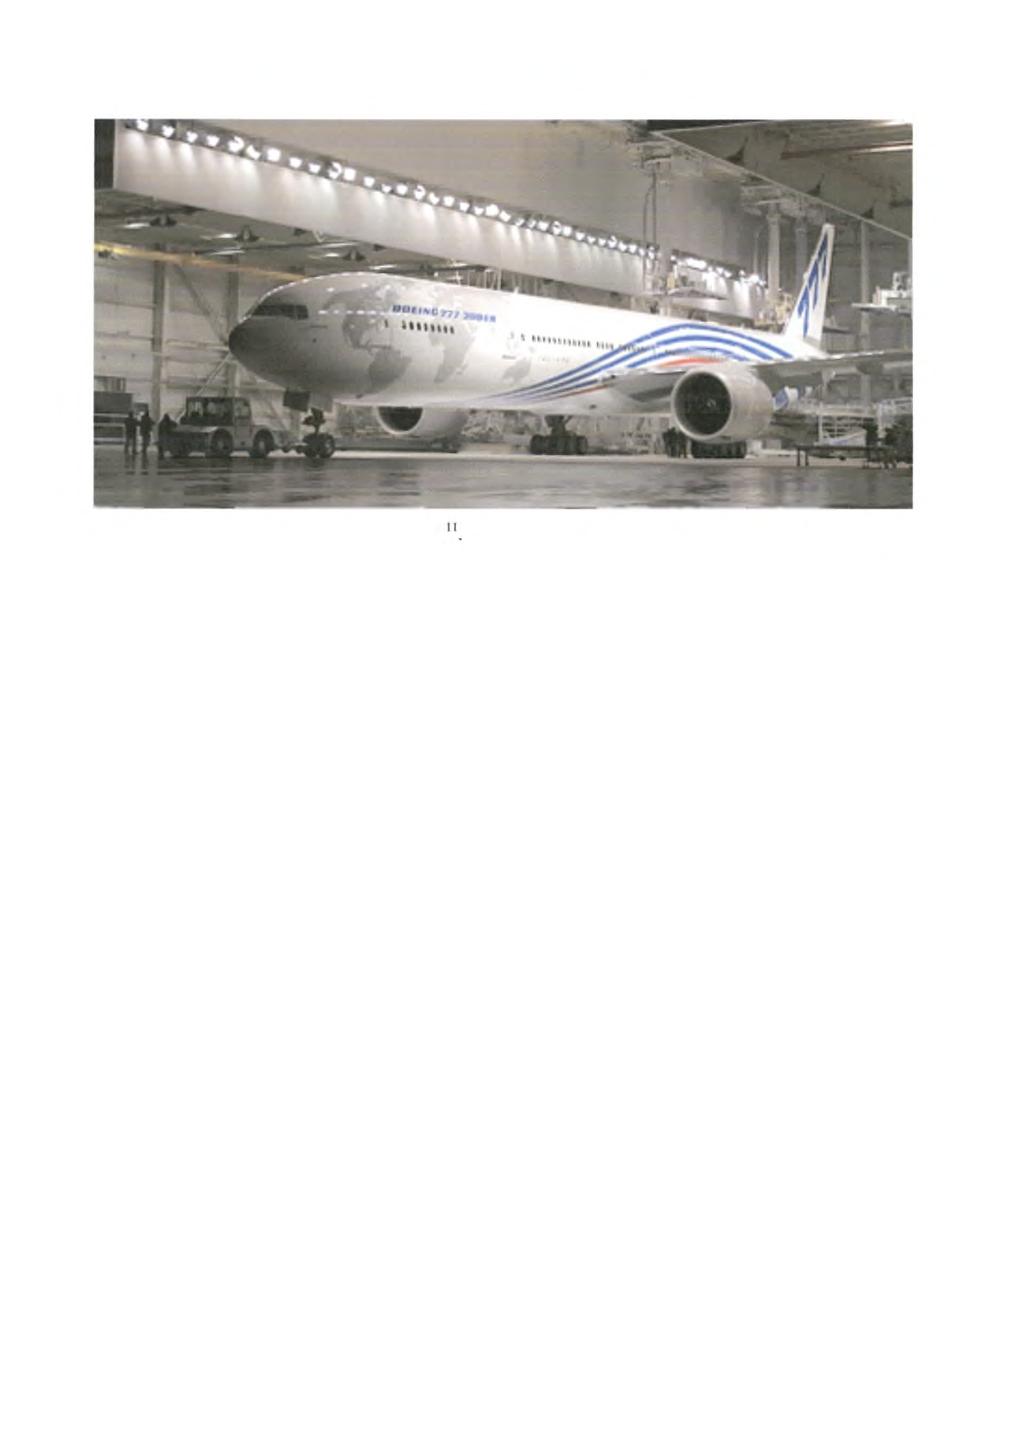 2.6.1 Αεροπορική βιομηχανία Σχήμα 2-10 : Αεροπλάνο τύπου Boeing 111 Οι σχεδιαστές των αεροσκαφών είναι σε διαρκή αναζήτηση υλικών τα οποία θα τους επιτρέψουν τον σχεδίασμά και την